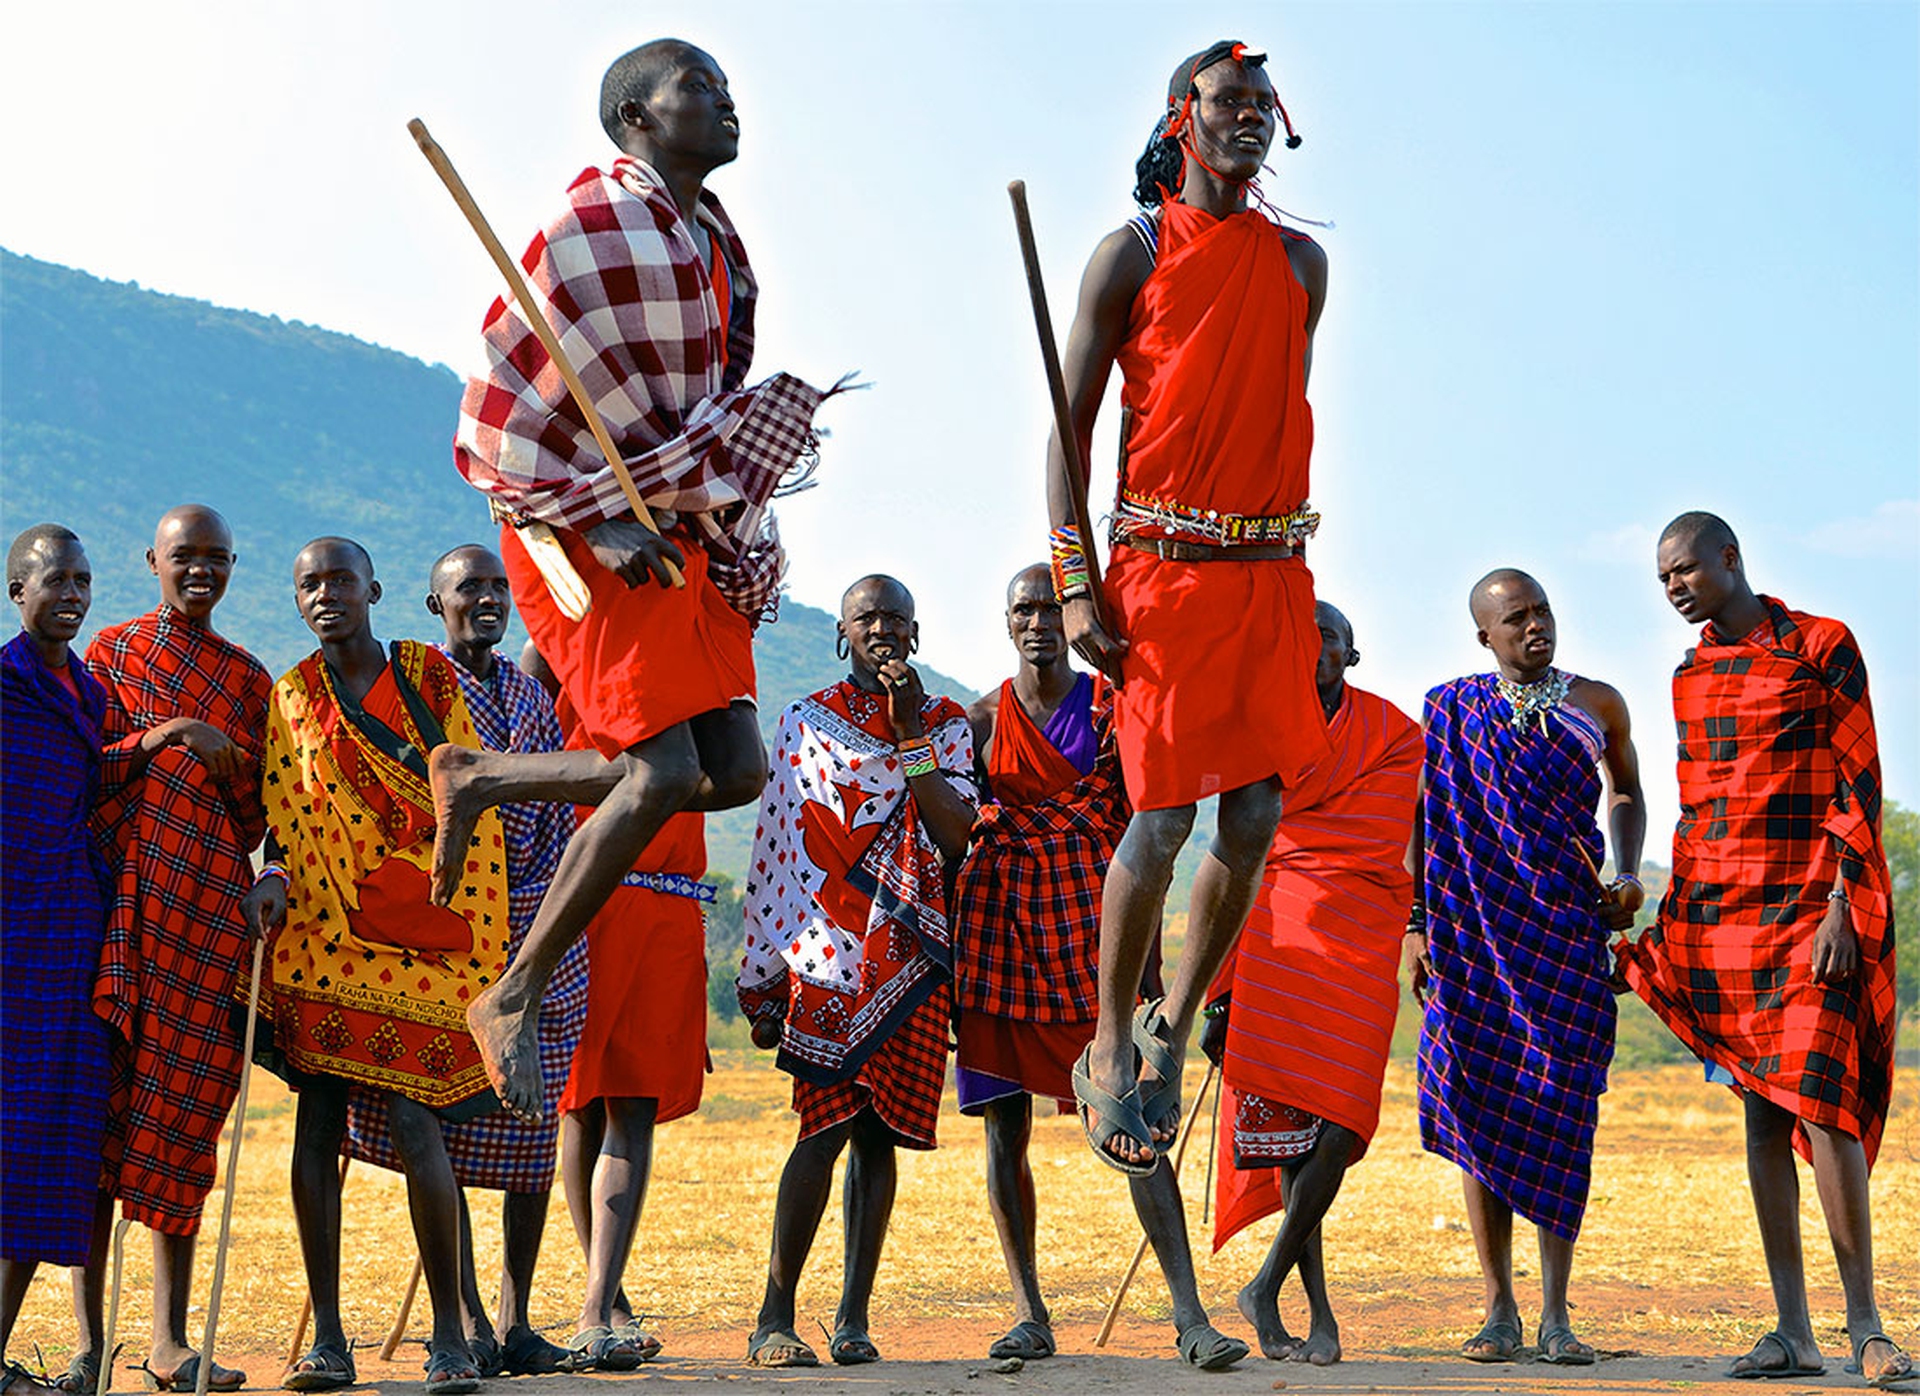 Tribe people. Масаи племя. Племя Масаи в Танзании. Масаи прыжки Масаи. Масаи народ Африки.